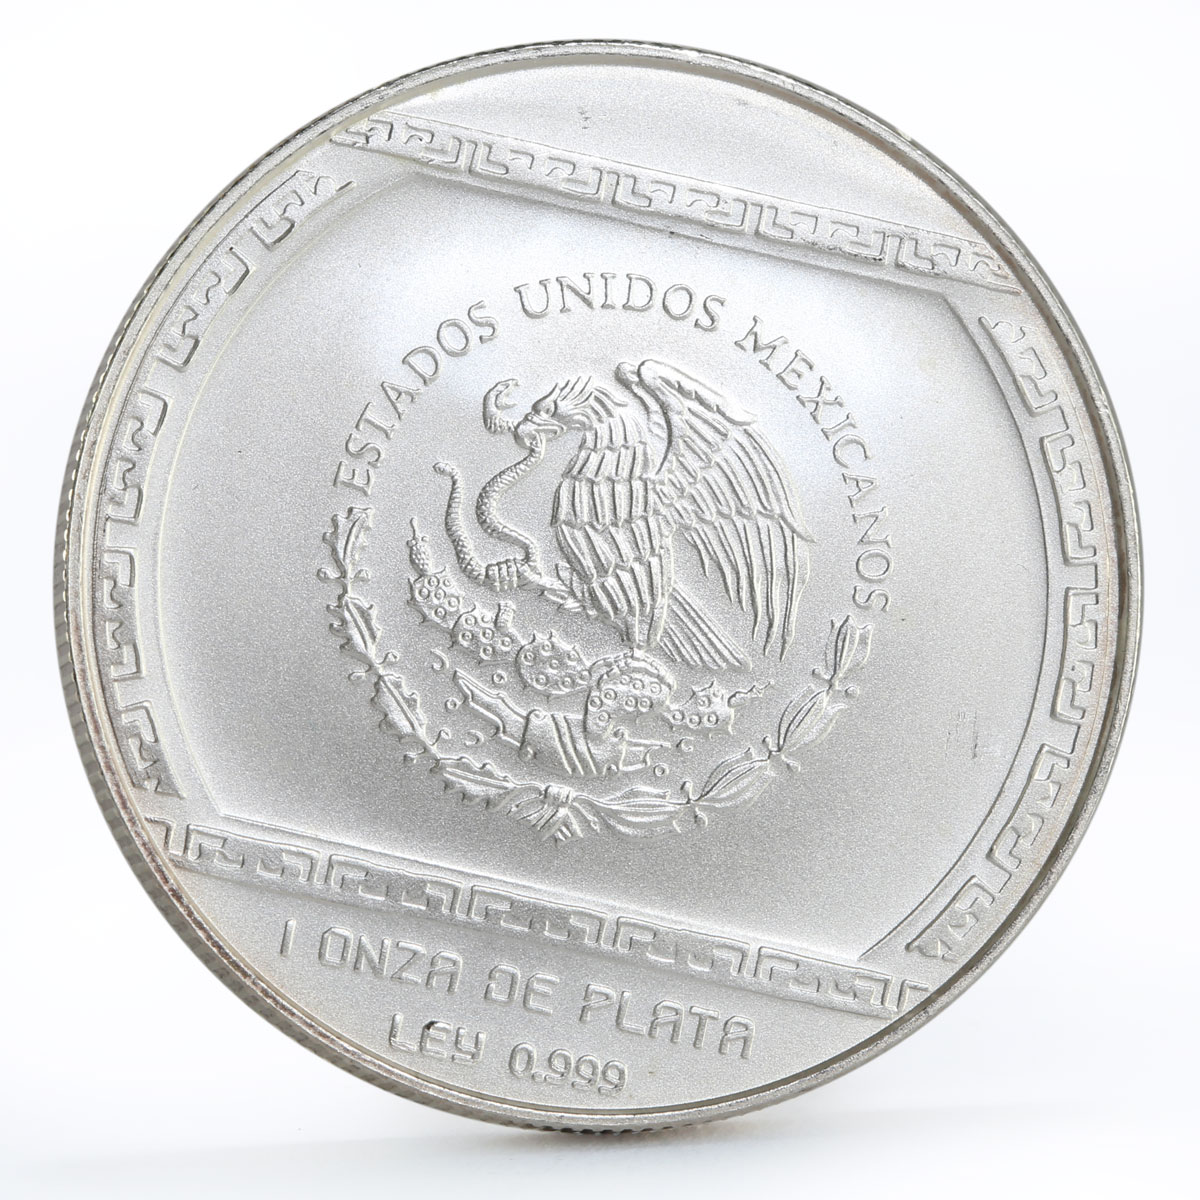 Mexico 5 pesos Precolombina series Palma Con Cocodrilo silver coin 1993